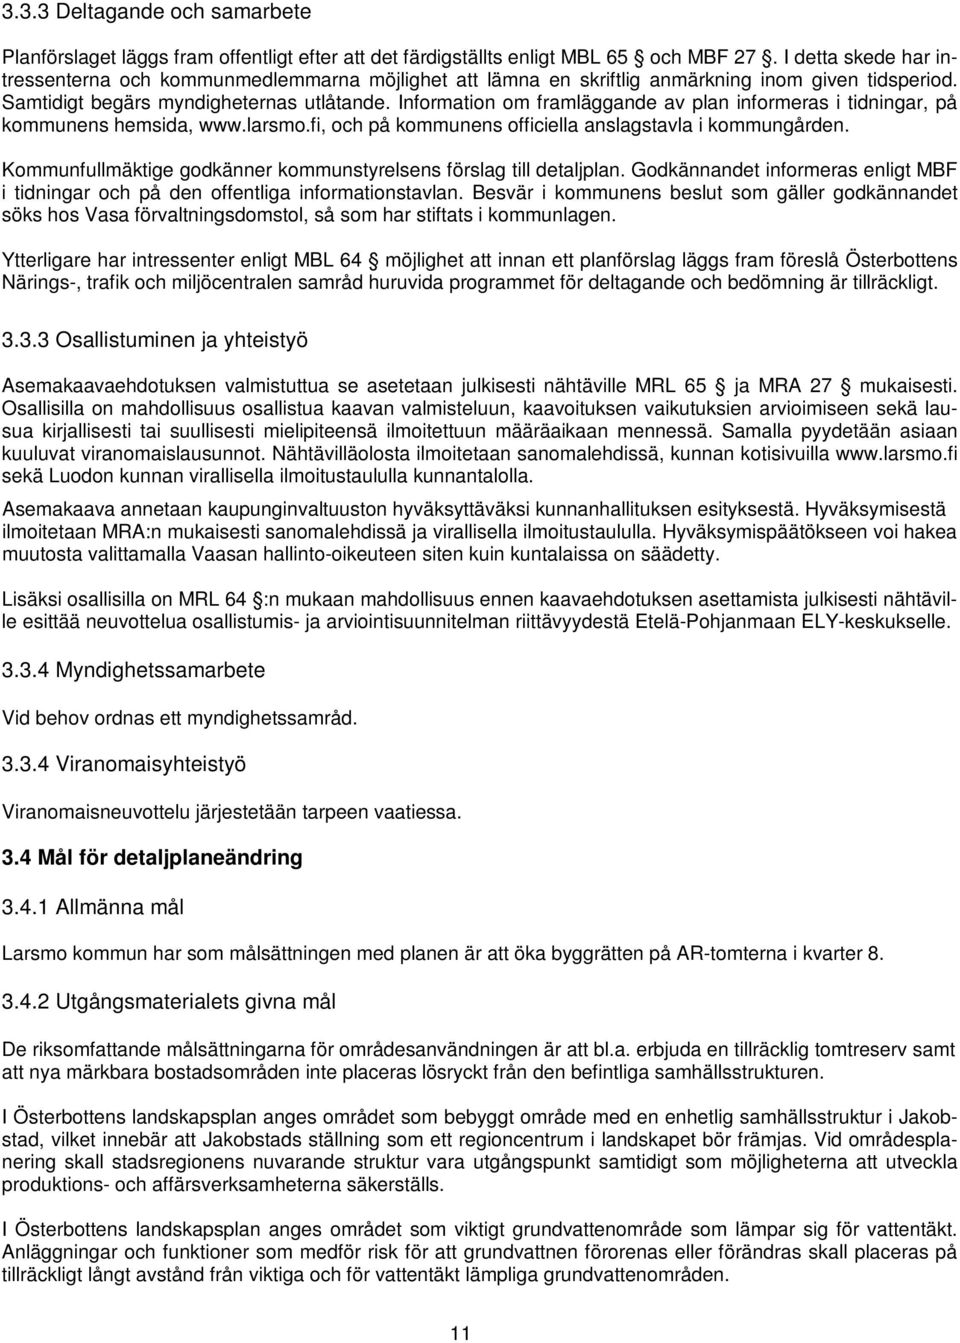 Information om framläggande av plan informeras i tidningar, på kommunens hemsida, www.larsmo.fi, och på kommunens officiella anslagstavla i kommungården.